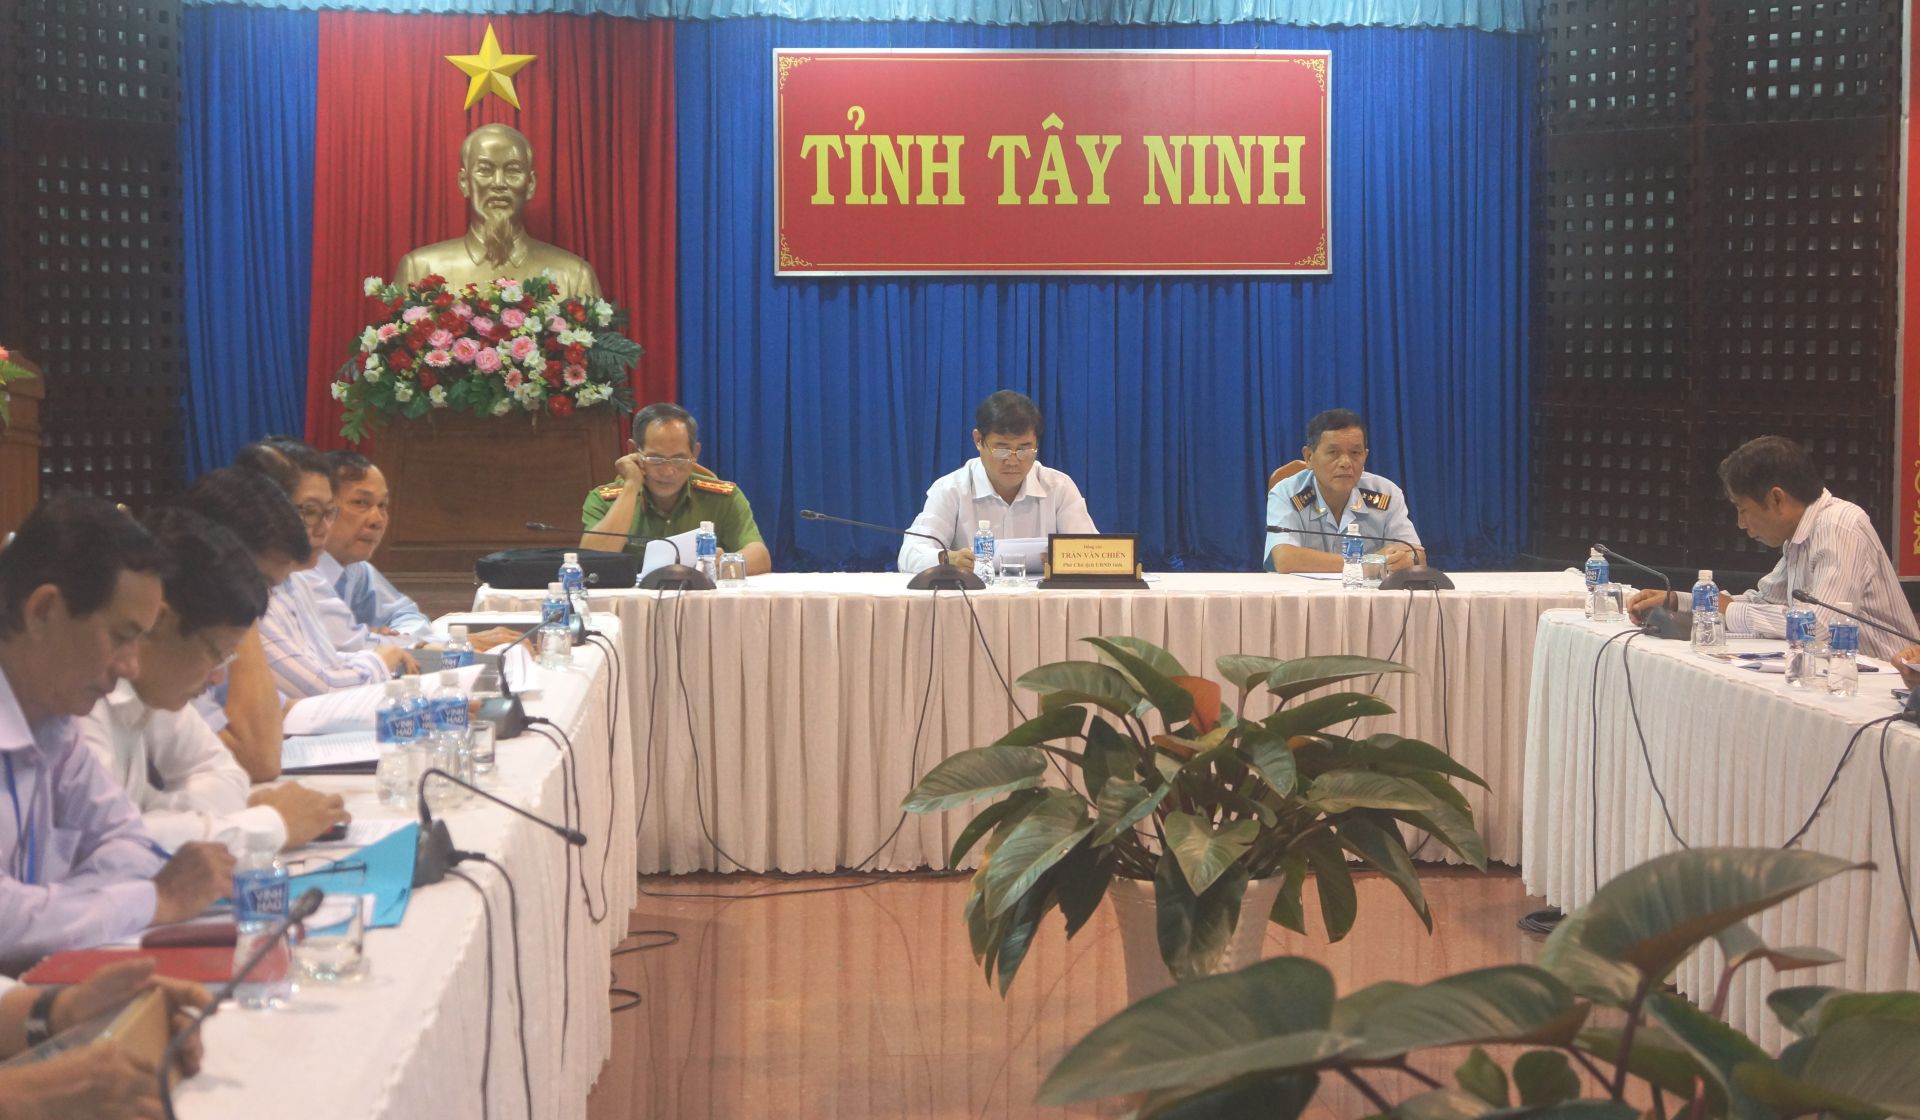 Điểm báo in Tây Ninh ngày 27.07.2019